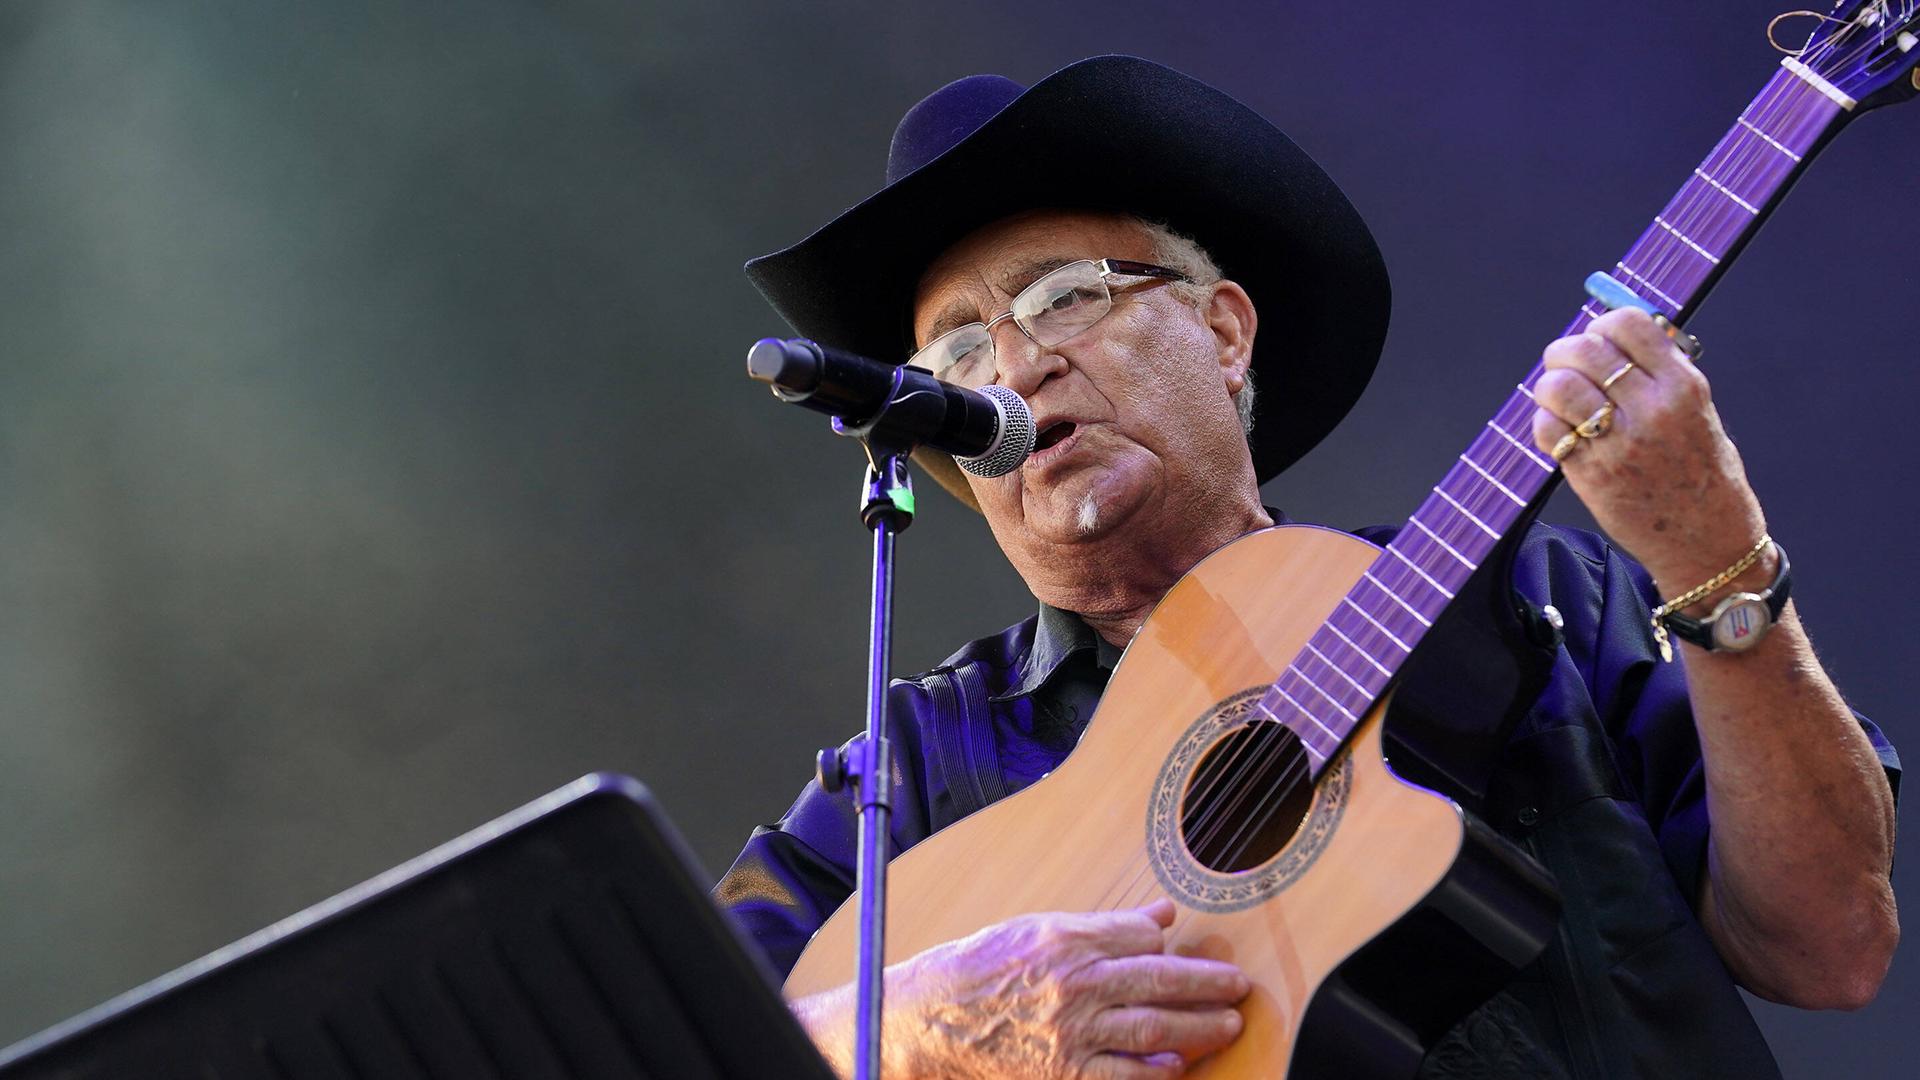 Eliades Ochoa spielt Gitarre und singt auf einer Bühne, während er einen schwarzen Hut trägt. 